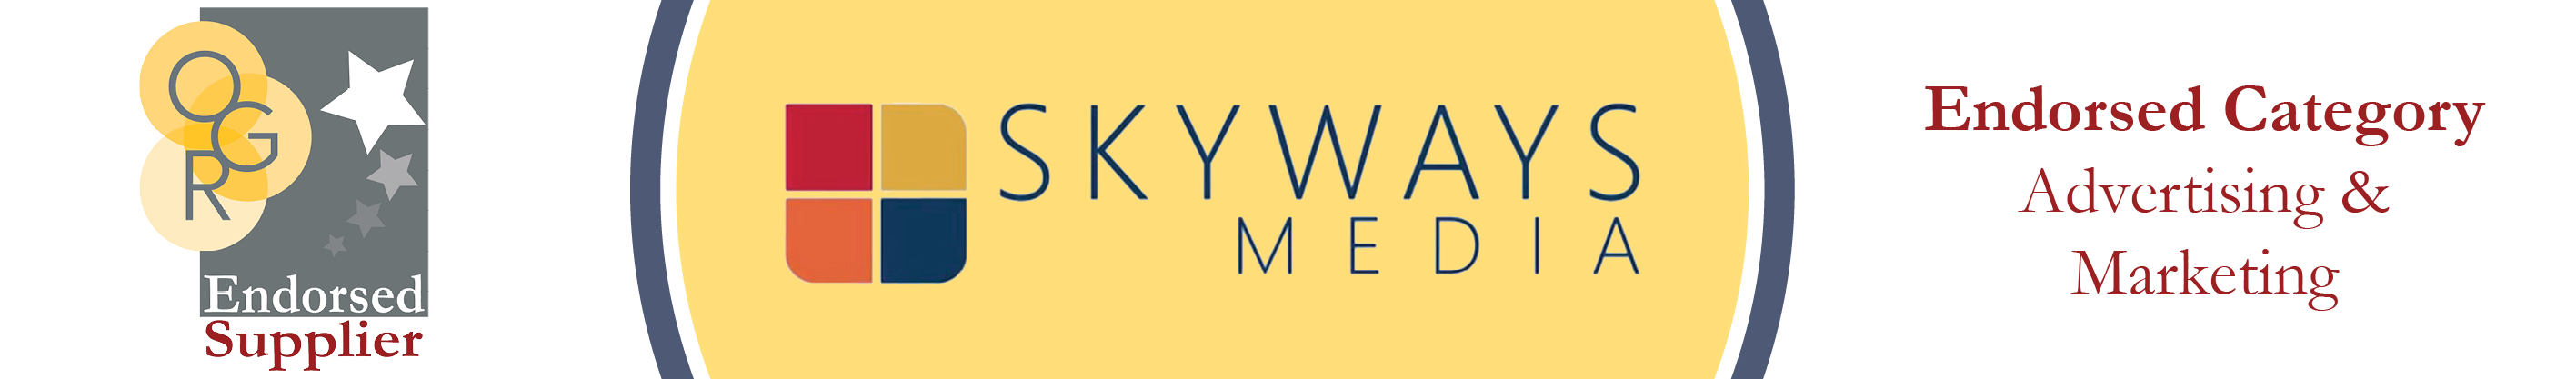 Skyways Media